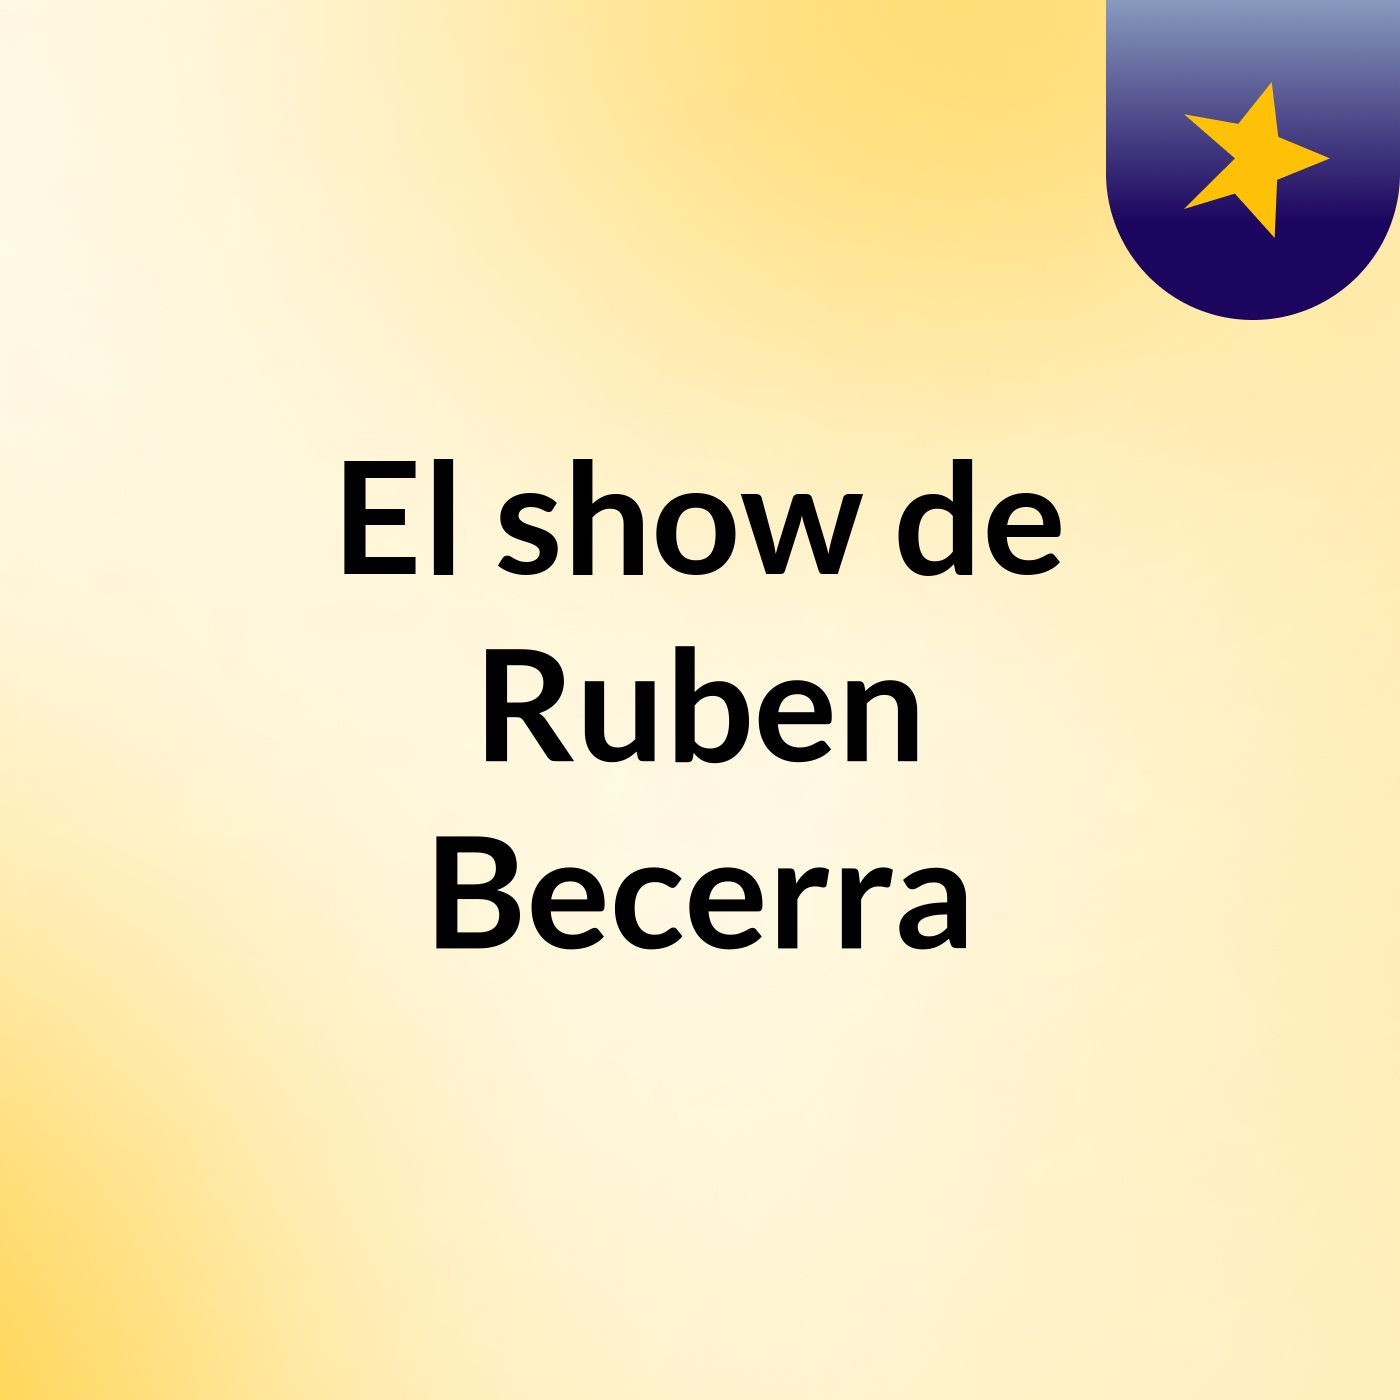 El show de Ruben Becerra